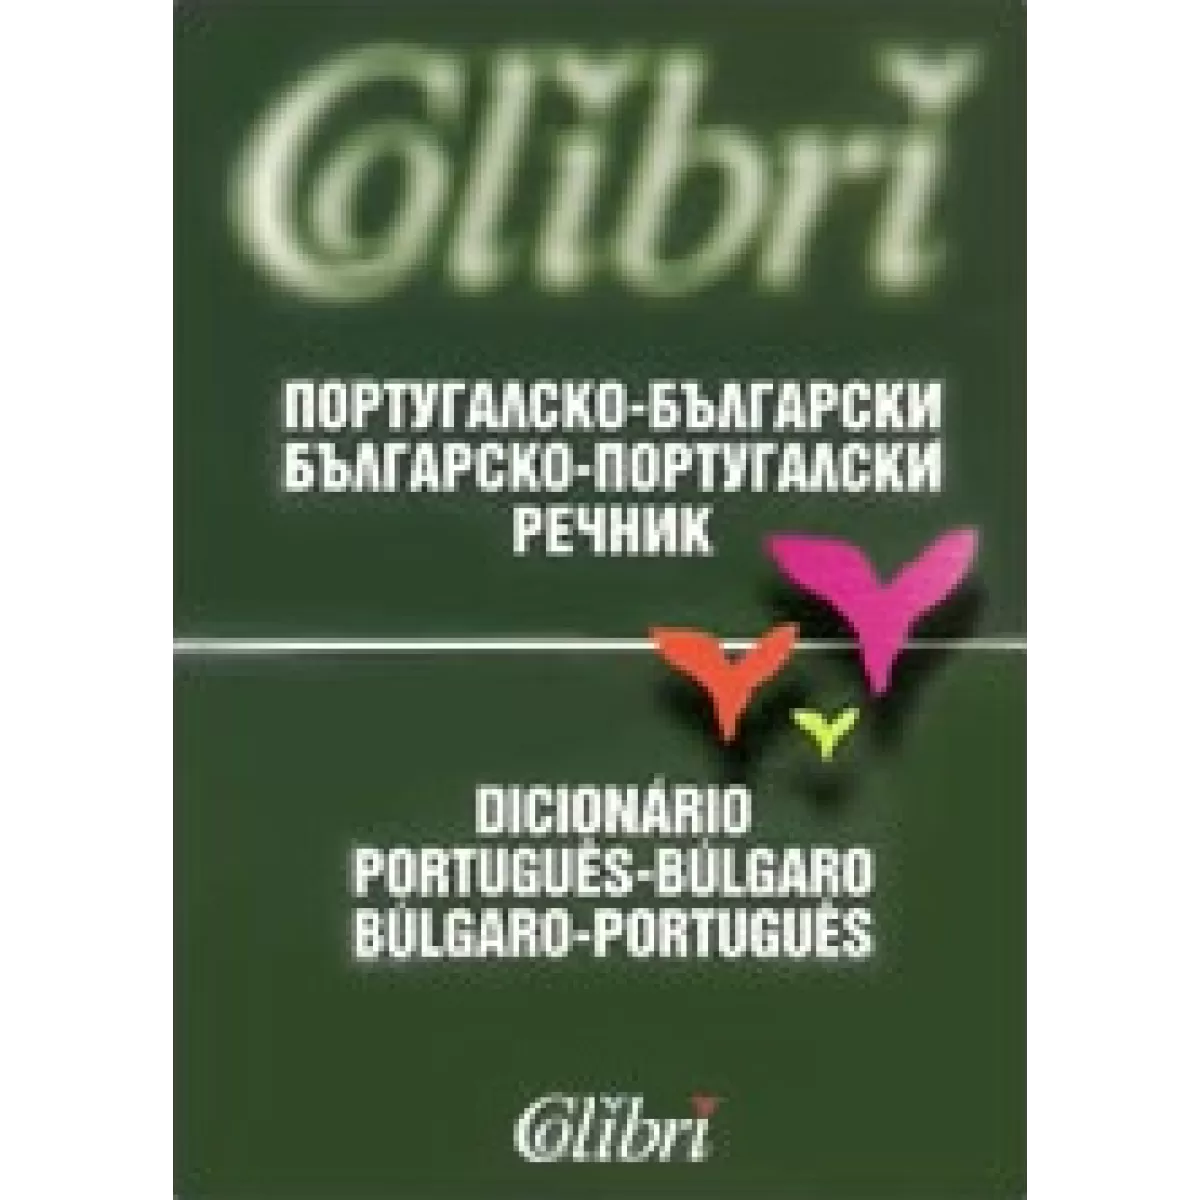 Португалско-български / Българско-португалски речник